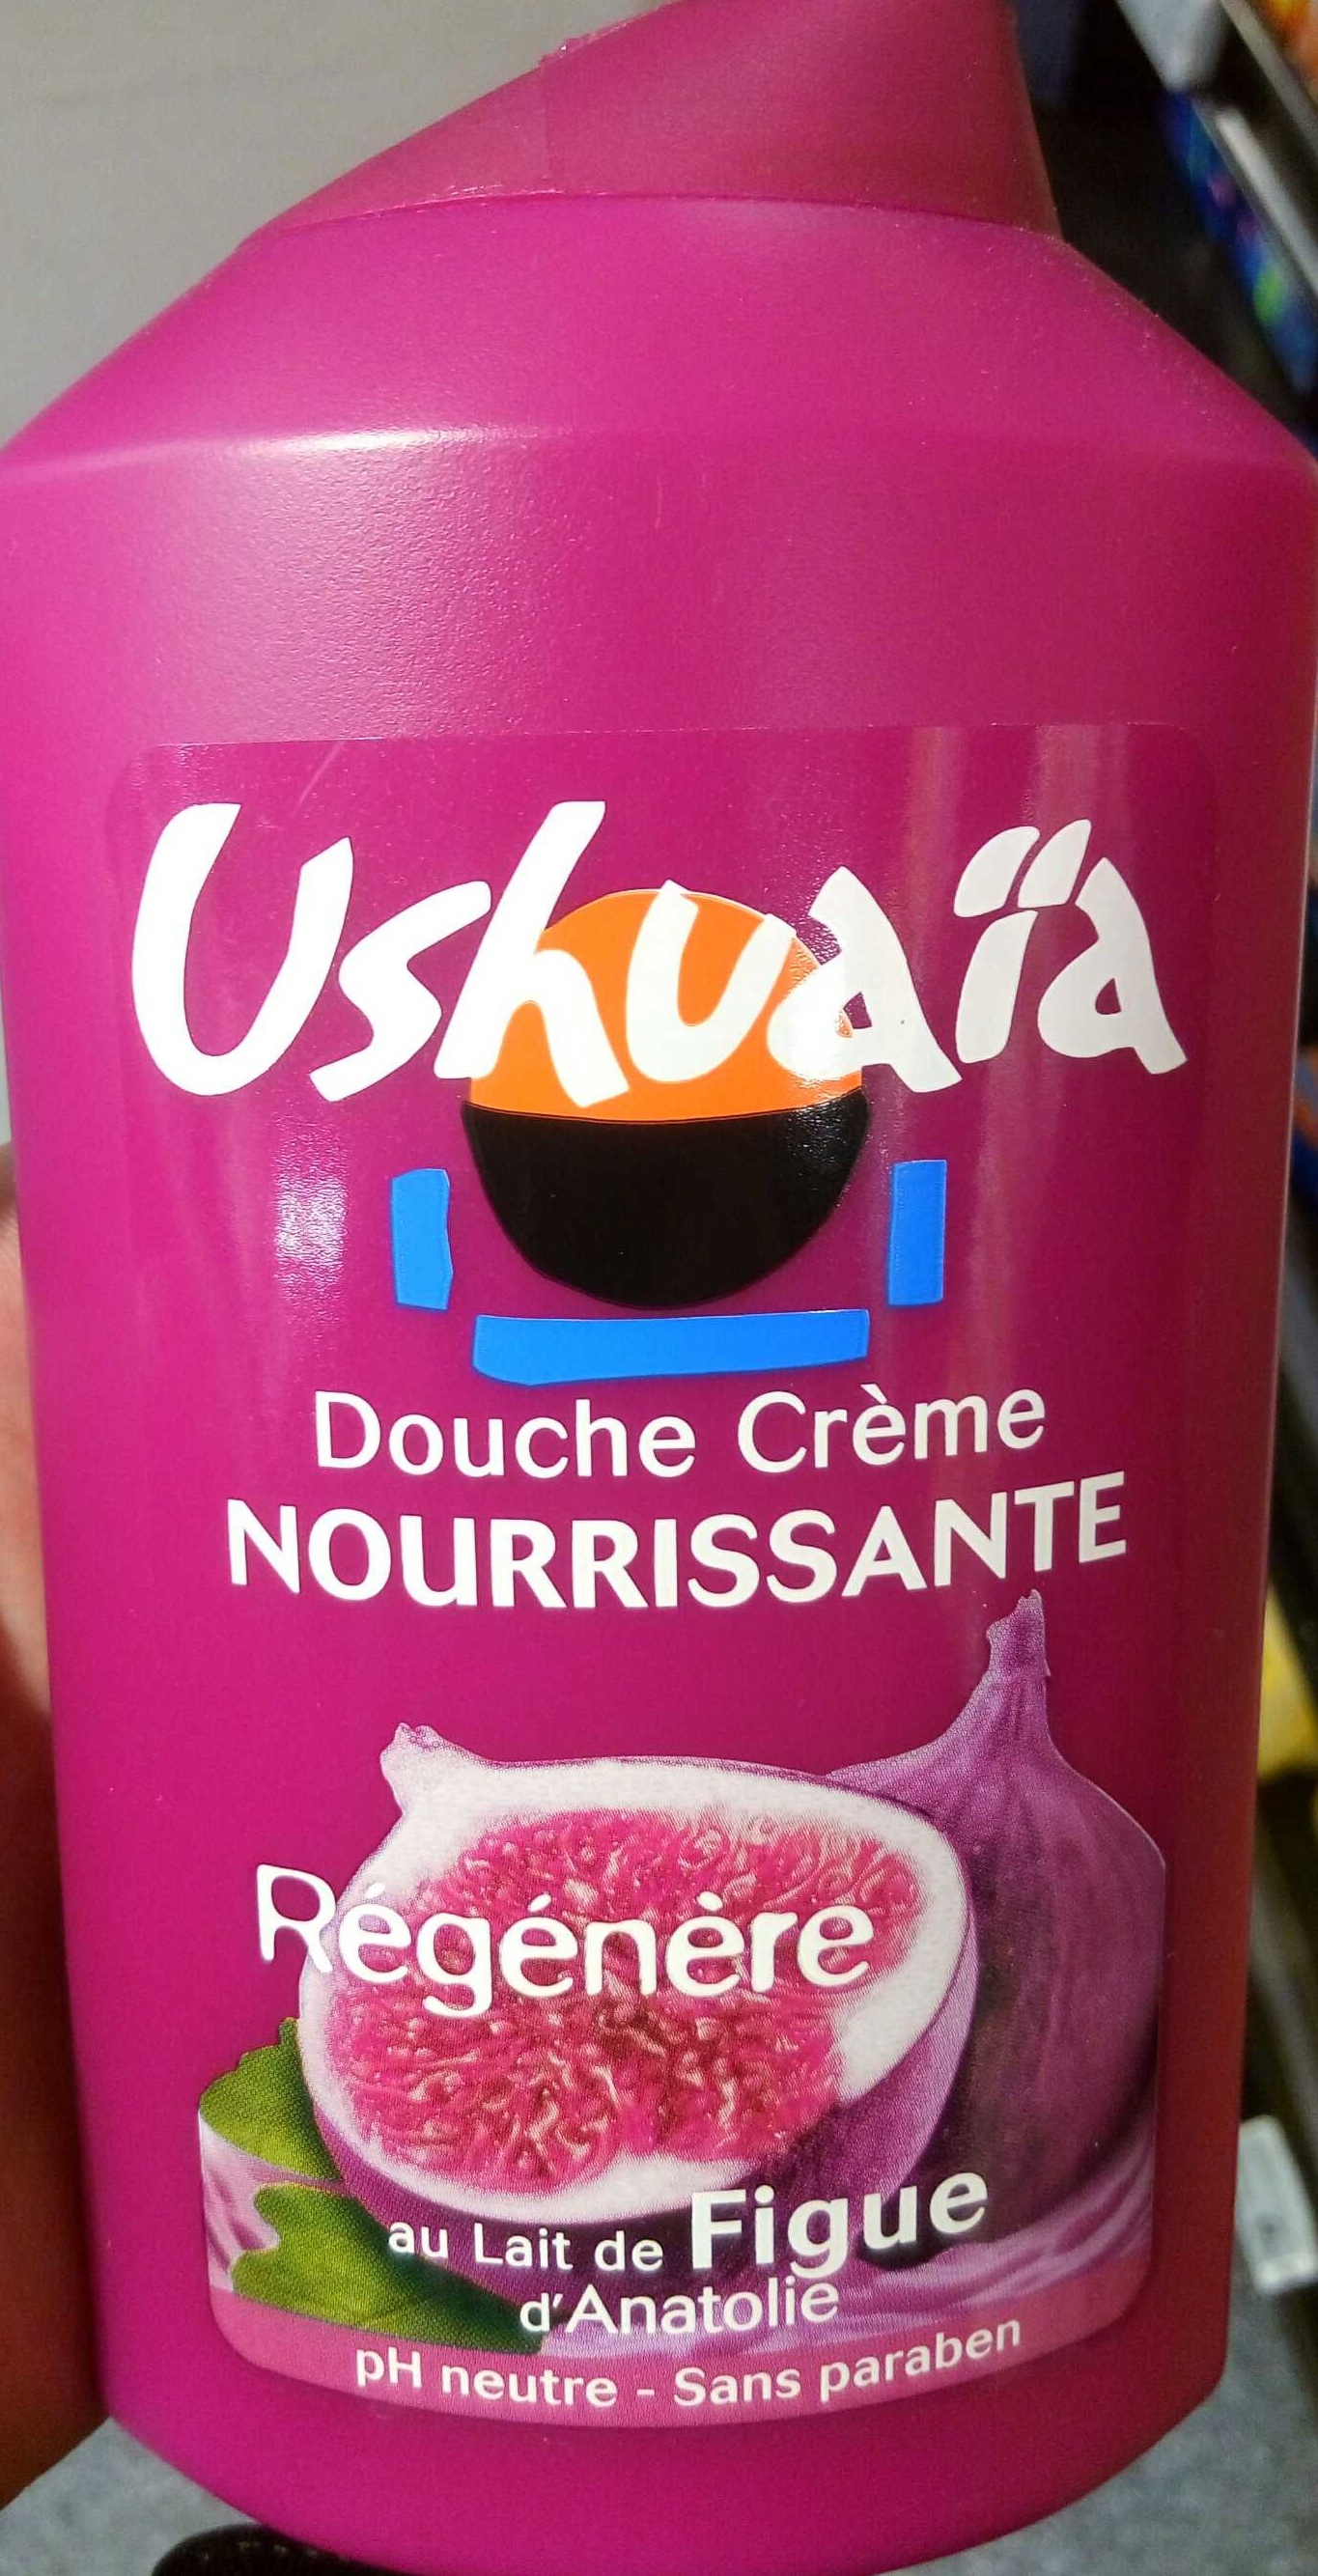 Douche Crème Nourissante au lait de Figue d'Anatolie - מוצר - fr